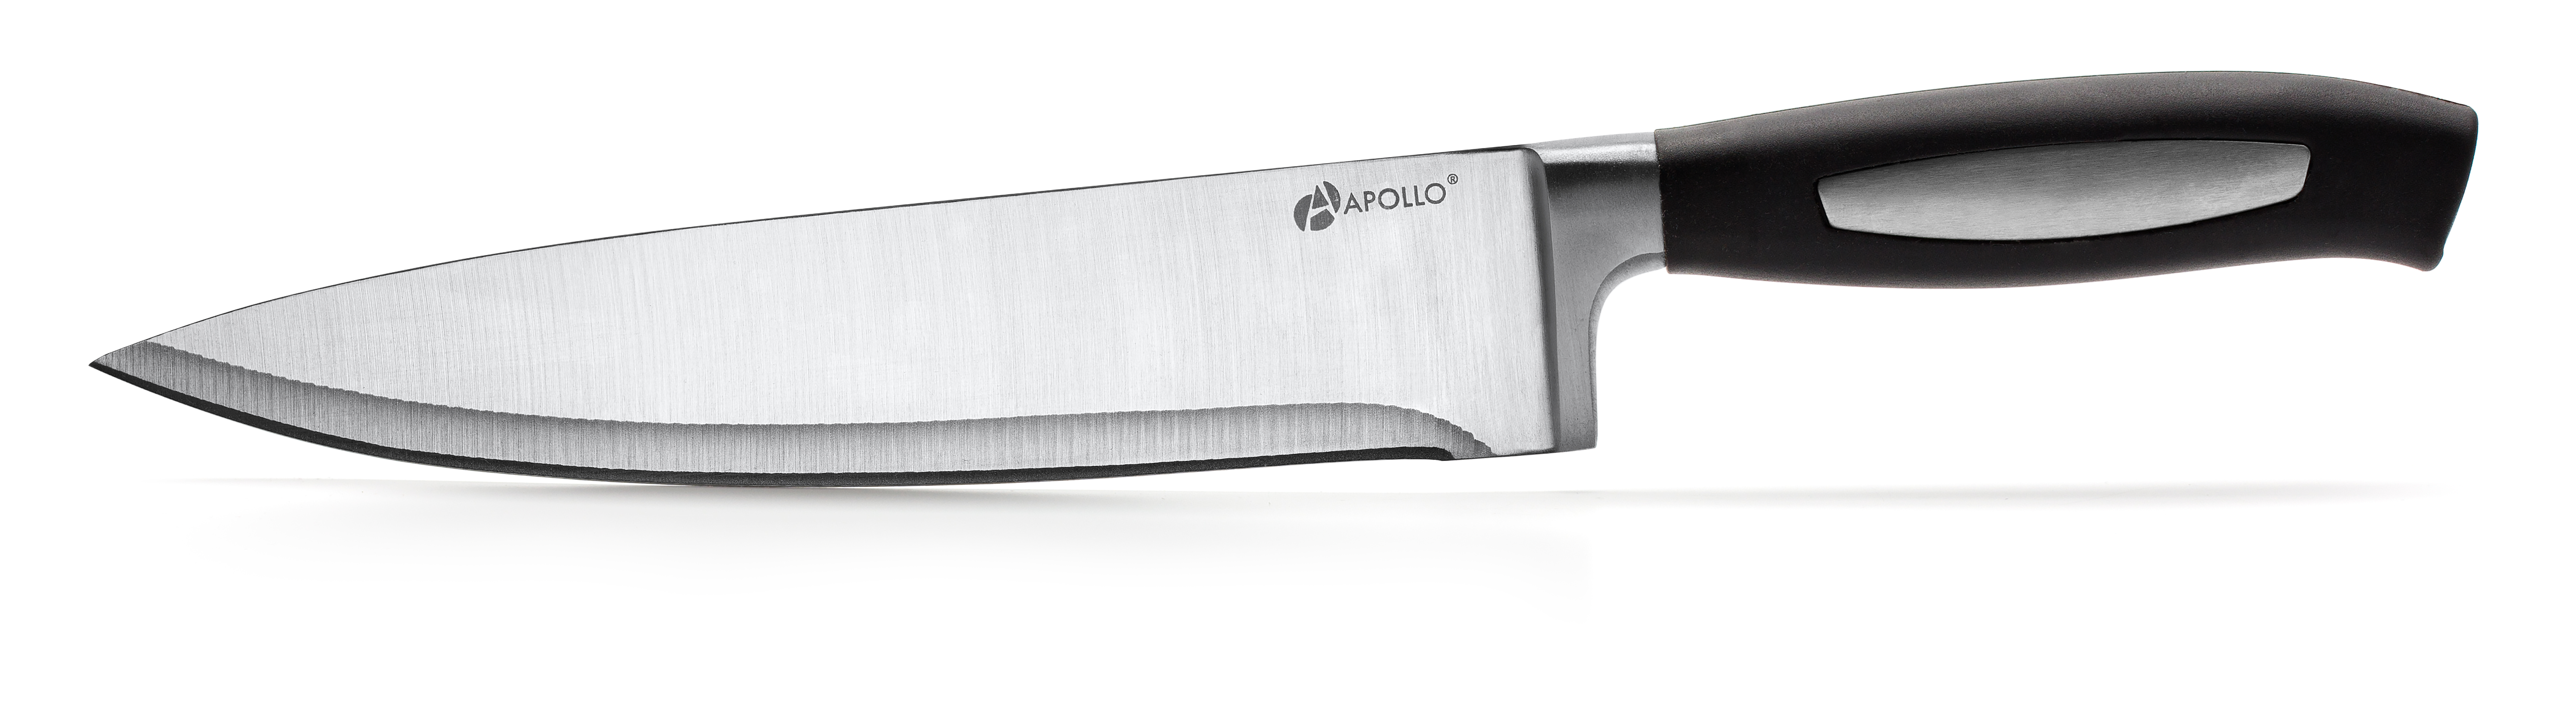 Кухонные ножи 20 см. Apollo нож кухонный relicto 11 см. Нож для рыбы Apollo Magenta 20см (MGT-006). Ножи Apollo Magenta. Аполло нож кухонный сталь.